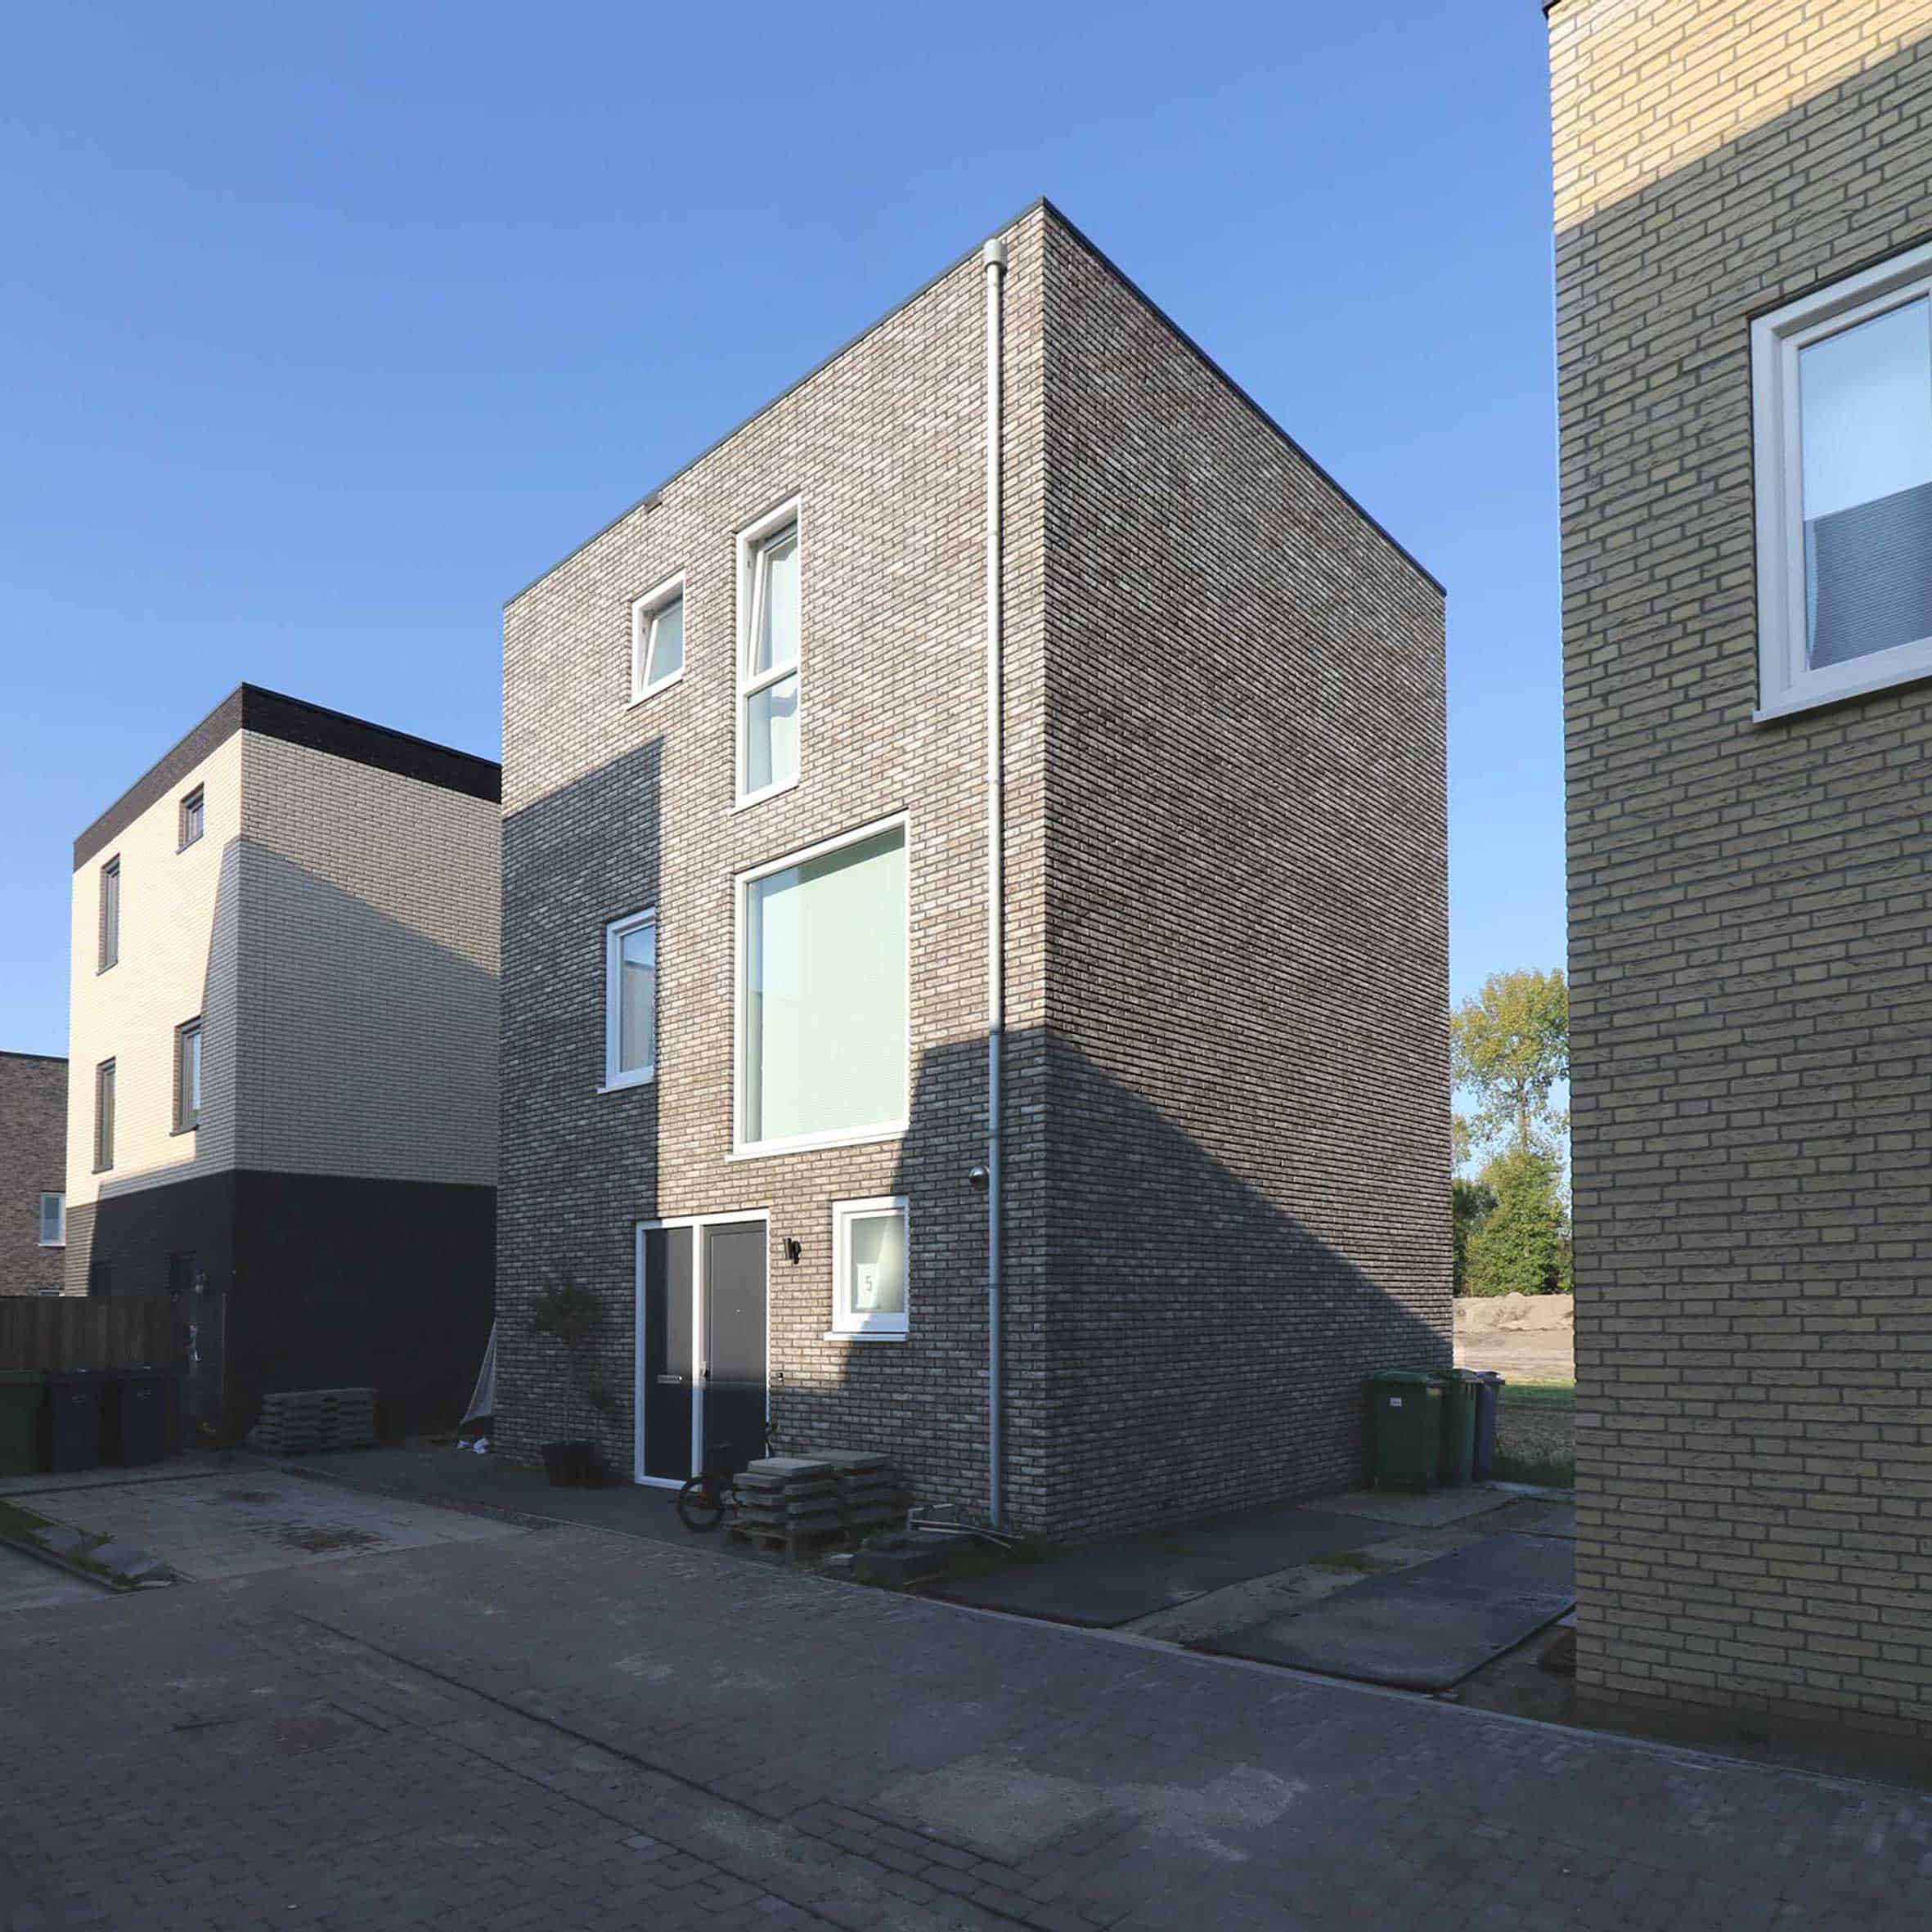 Vrijstaande woning in het 'vrije veld' Almere Poort